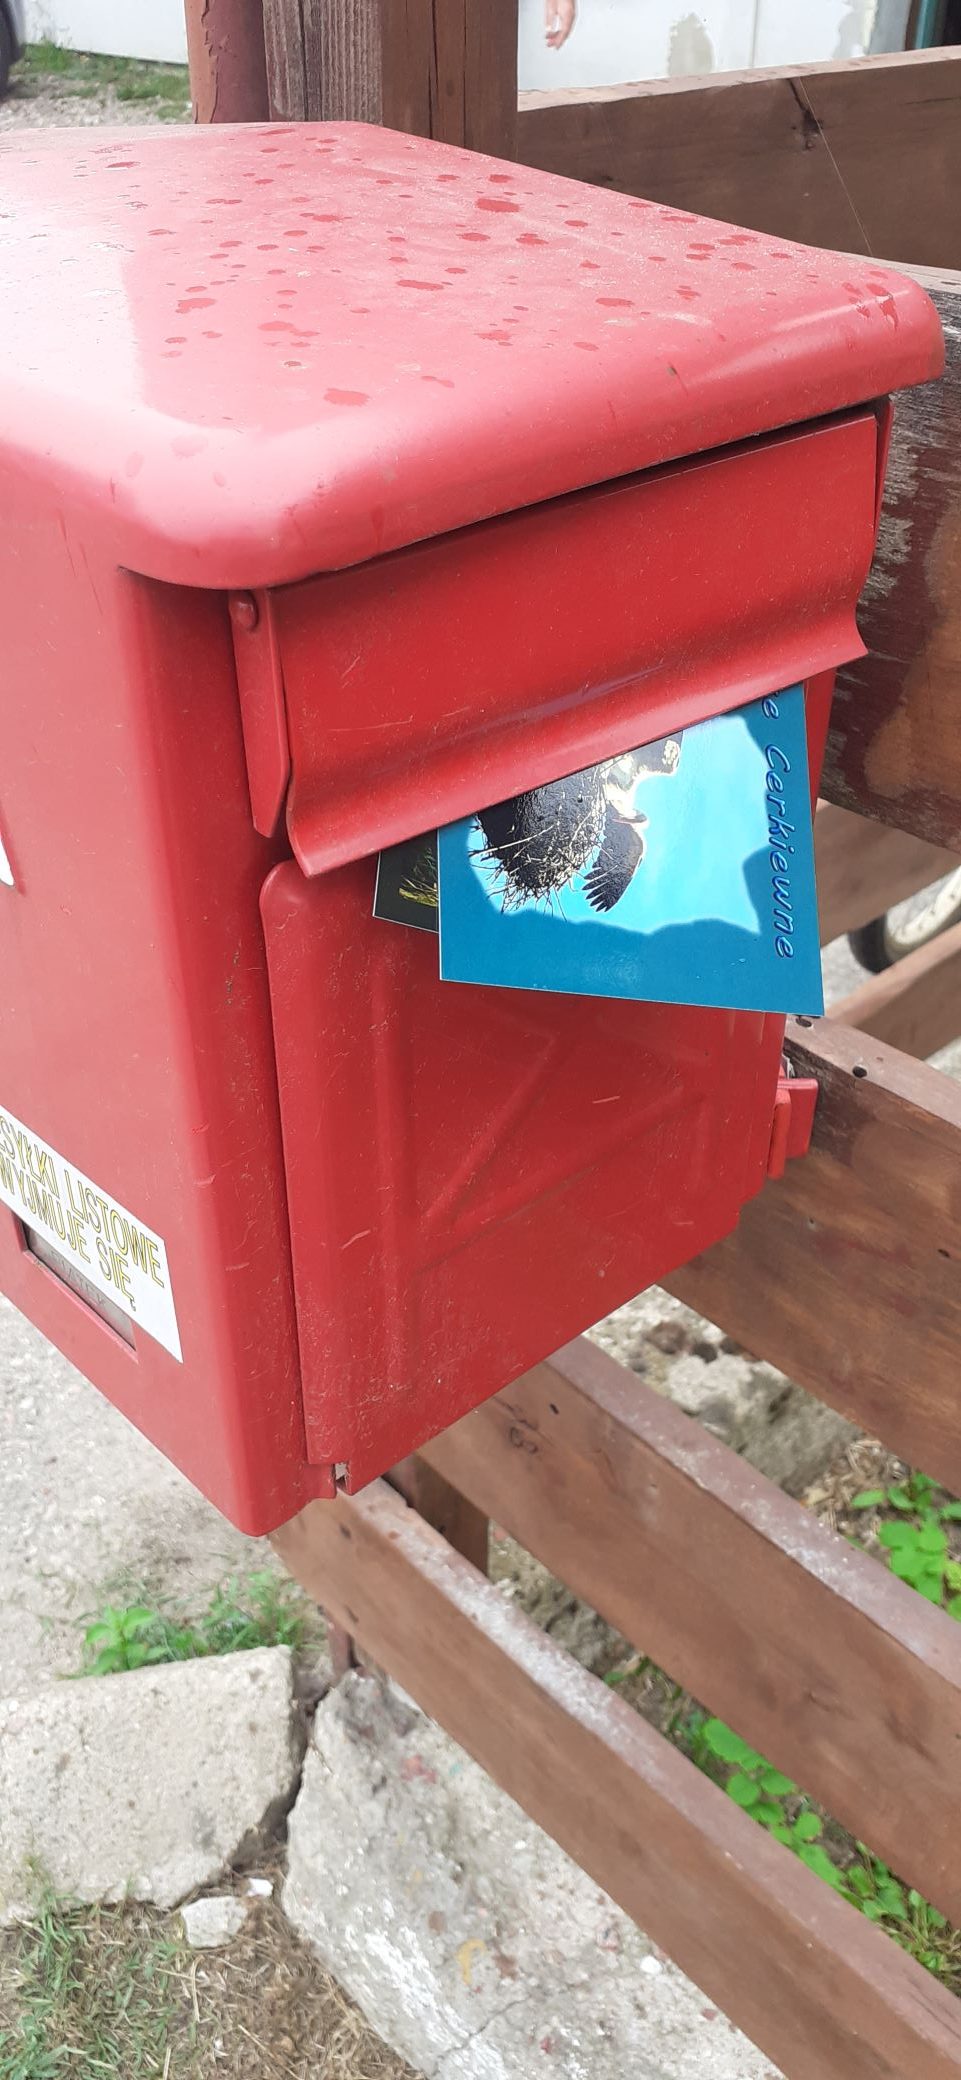 karta pocztowa z pozdrowieniami trafia do skrzynki pocztowej